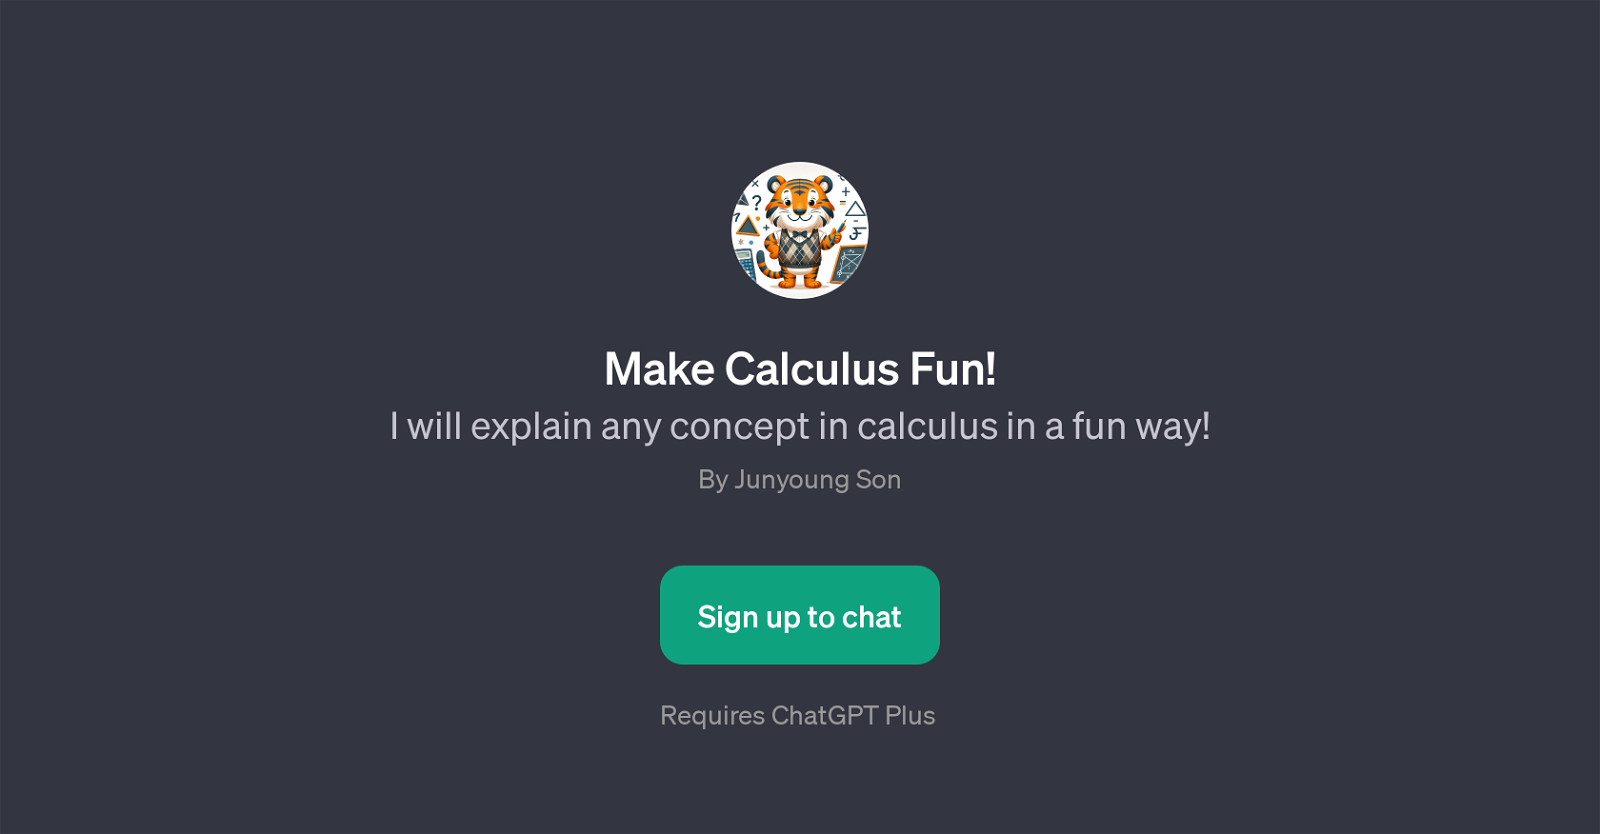 Make Calculus Fun website